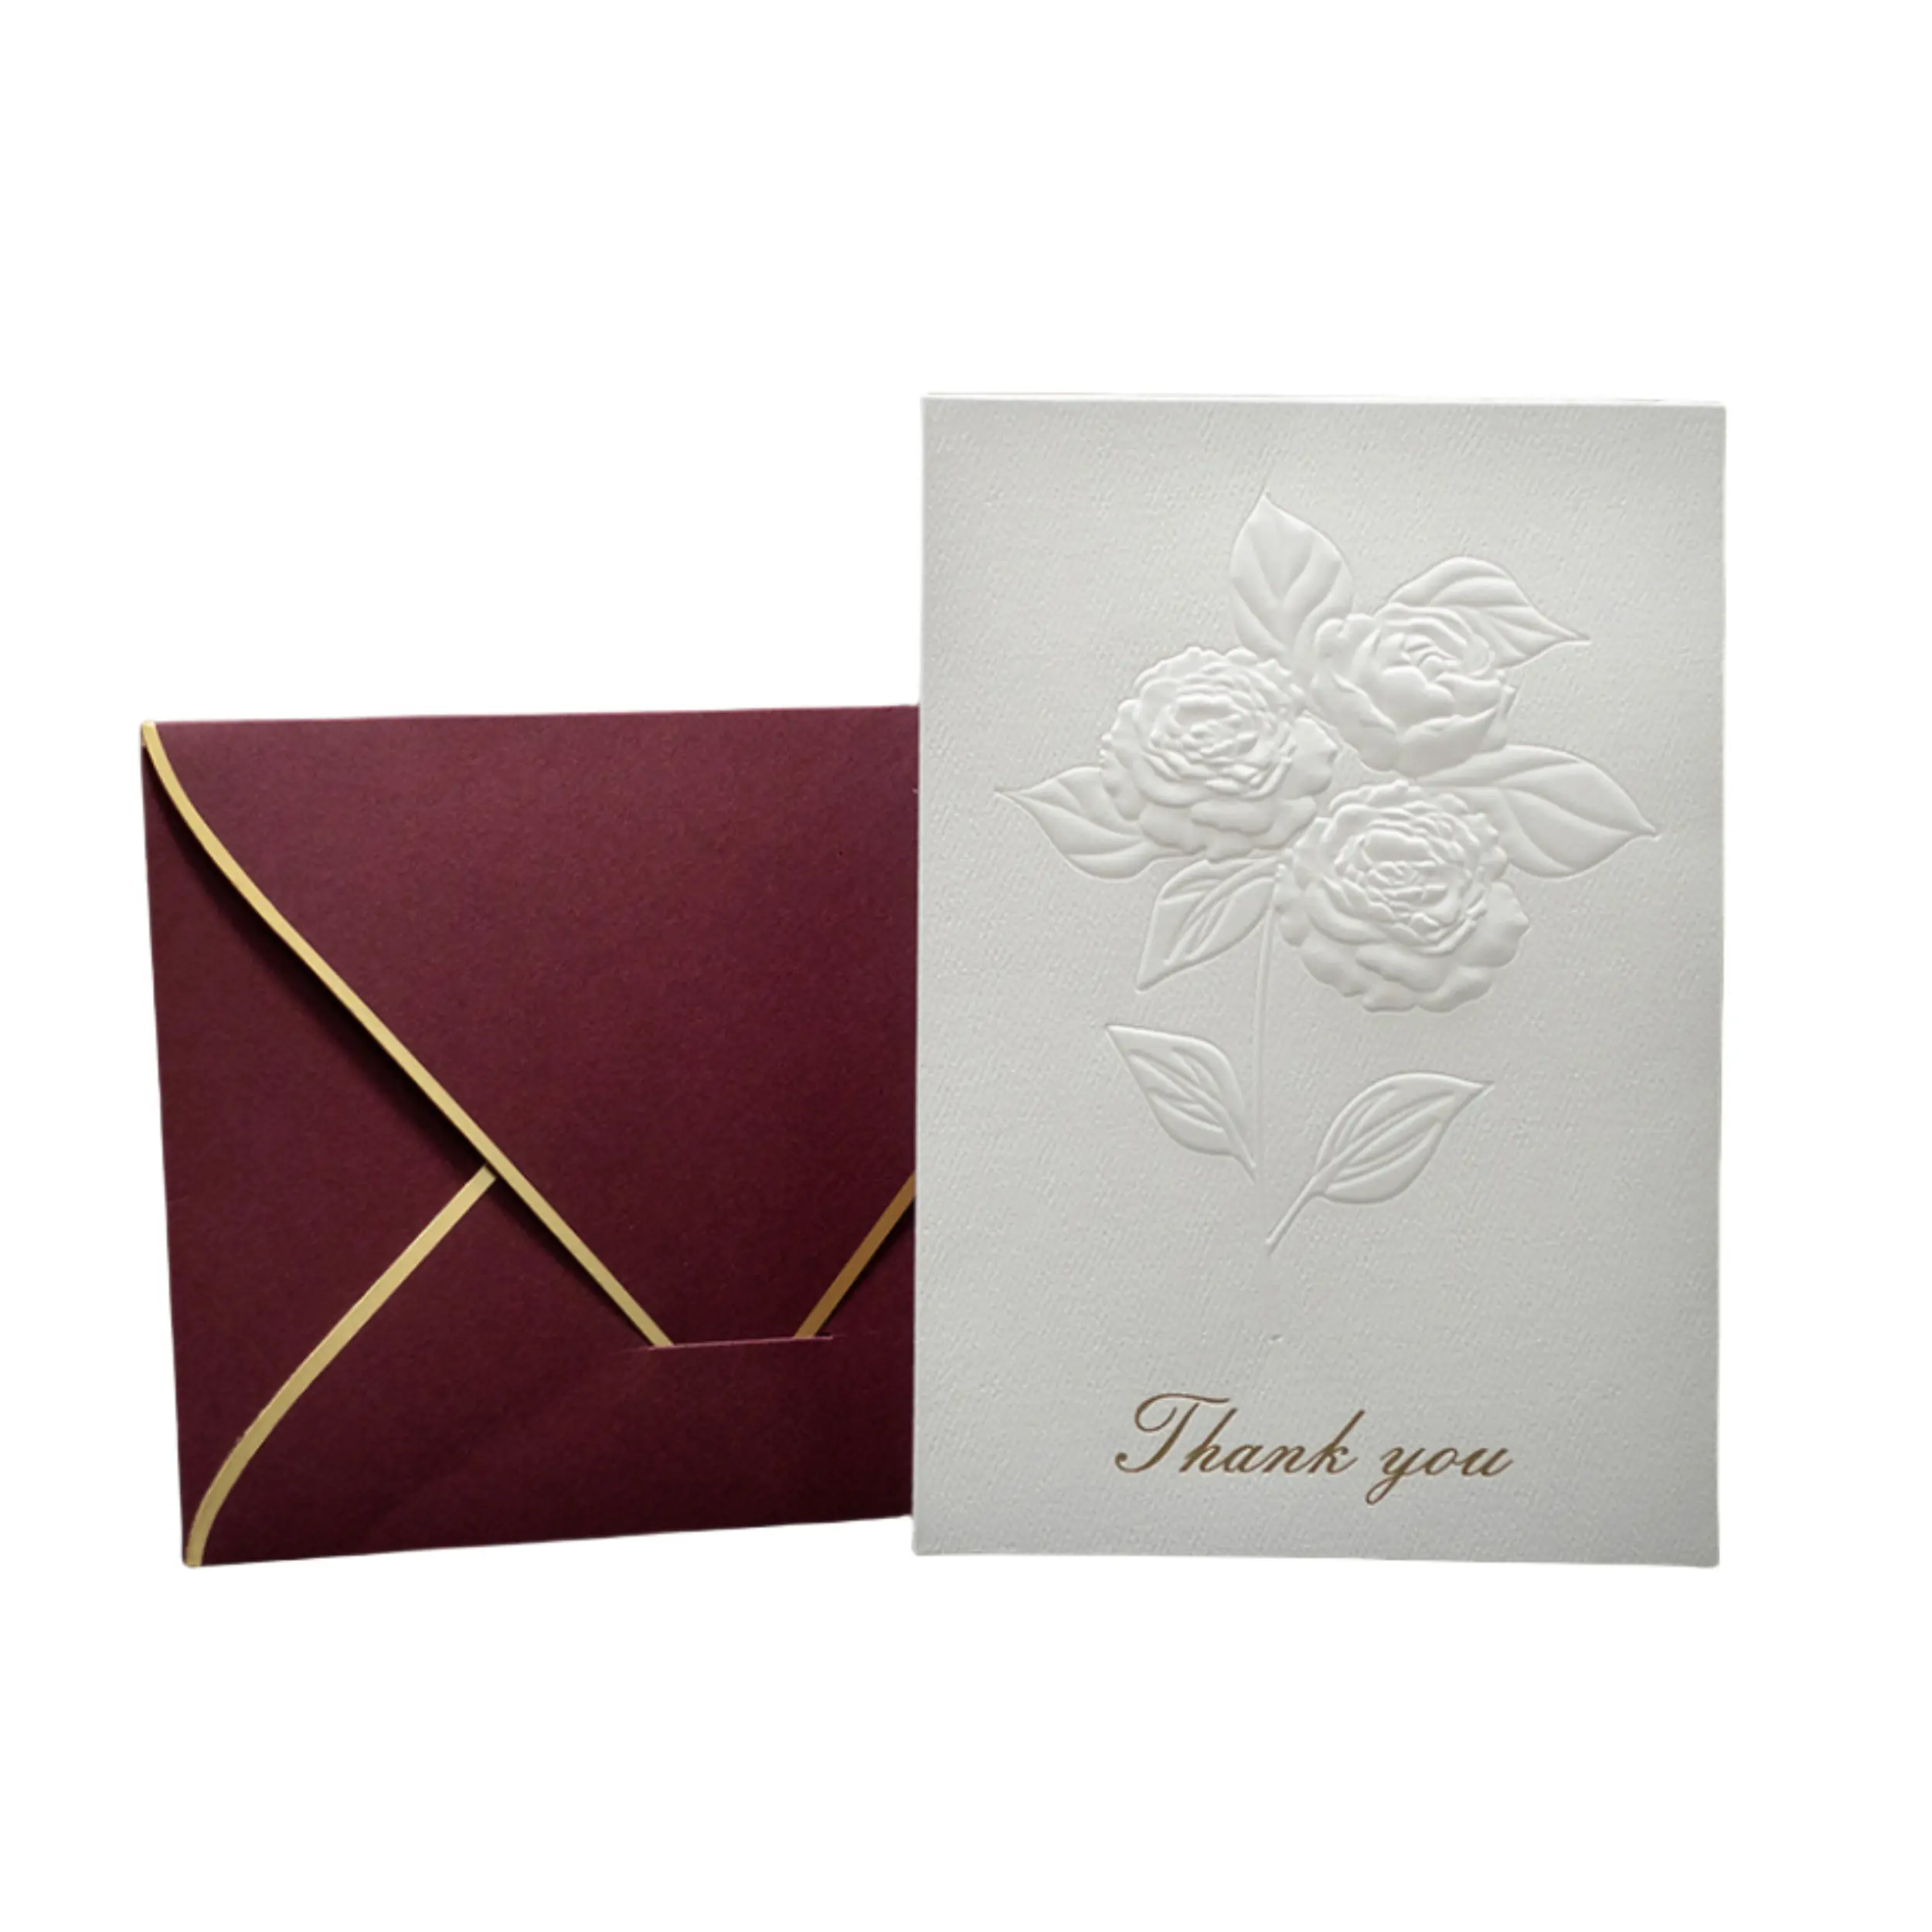 طقم بطاقات ظرفية فاخرة مخصصة بطباعة ذهبية محفورة لدعوات "thank you" للبيع